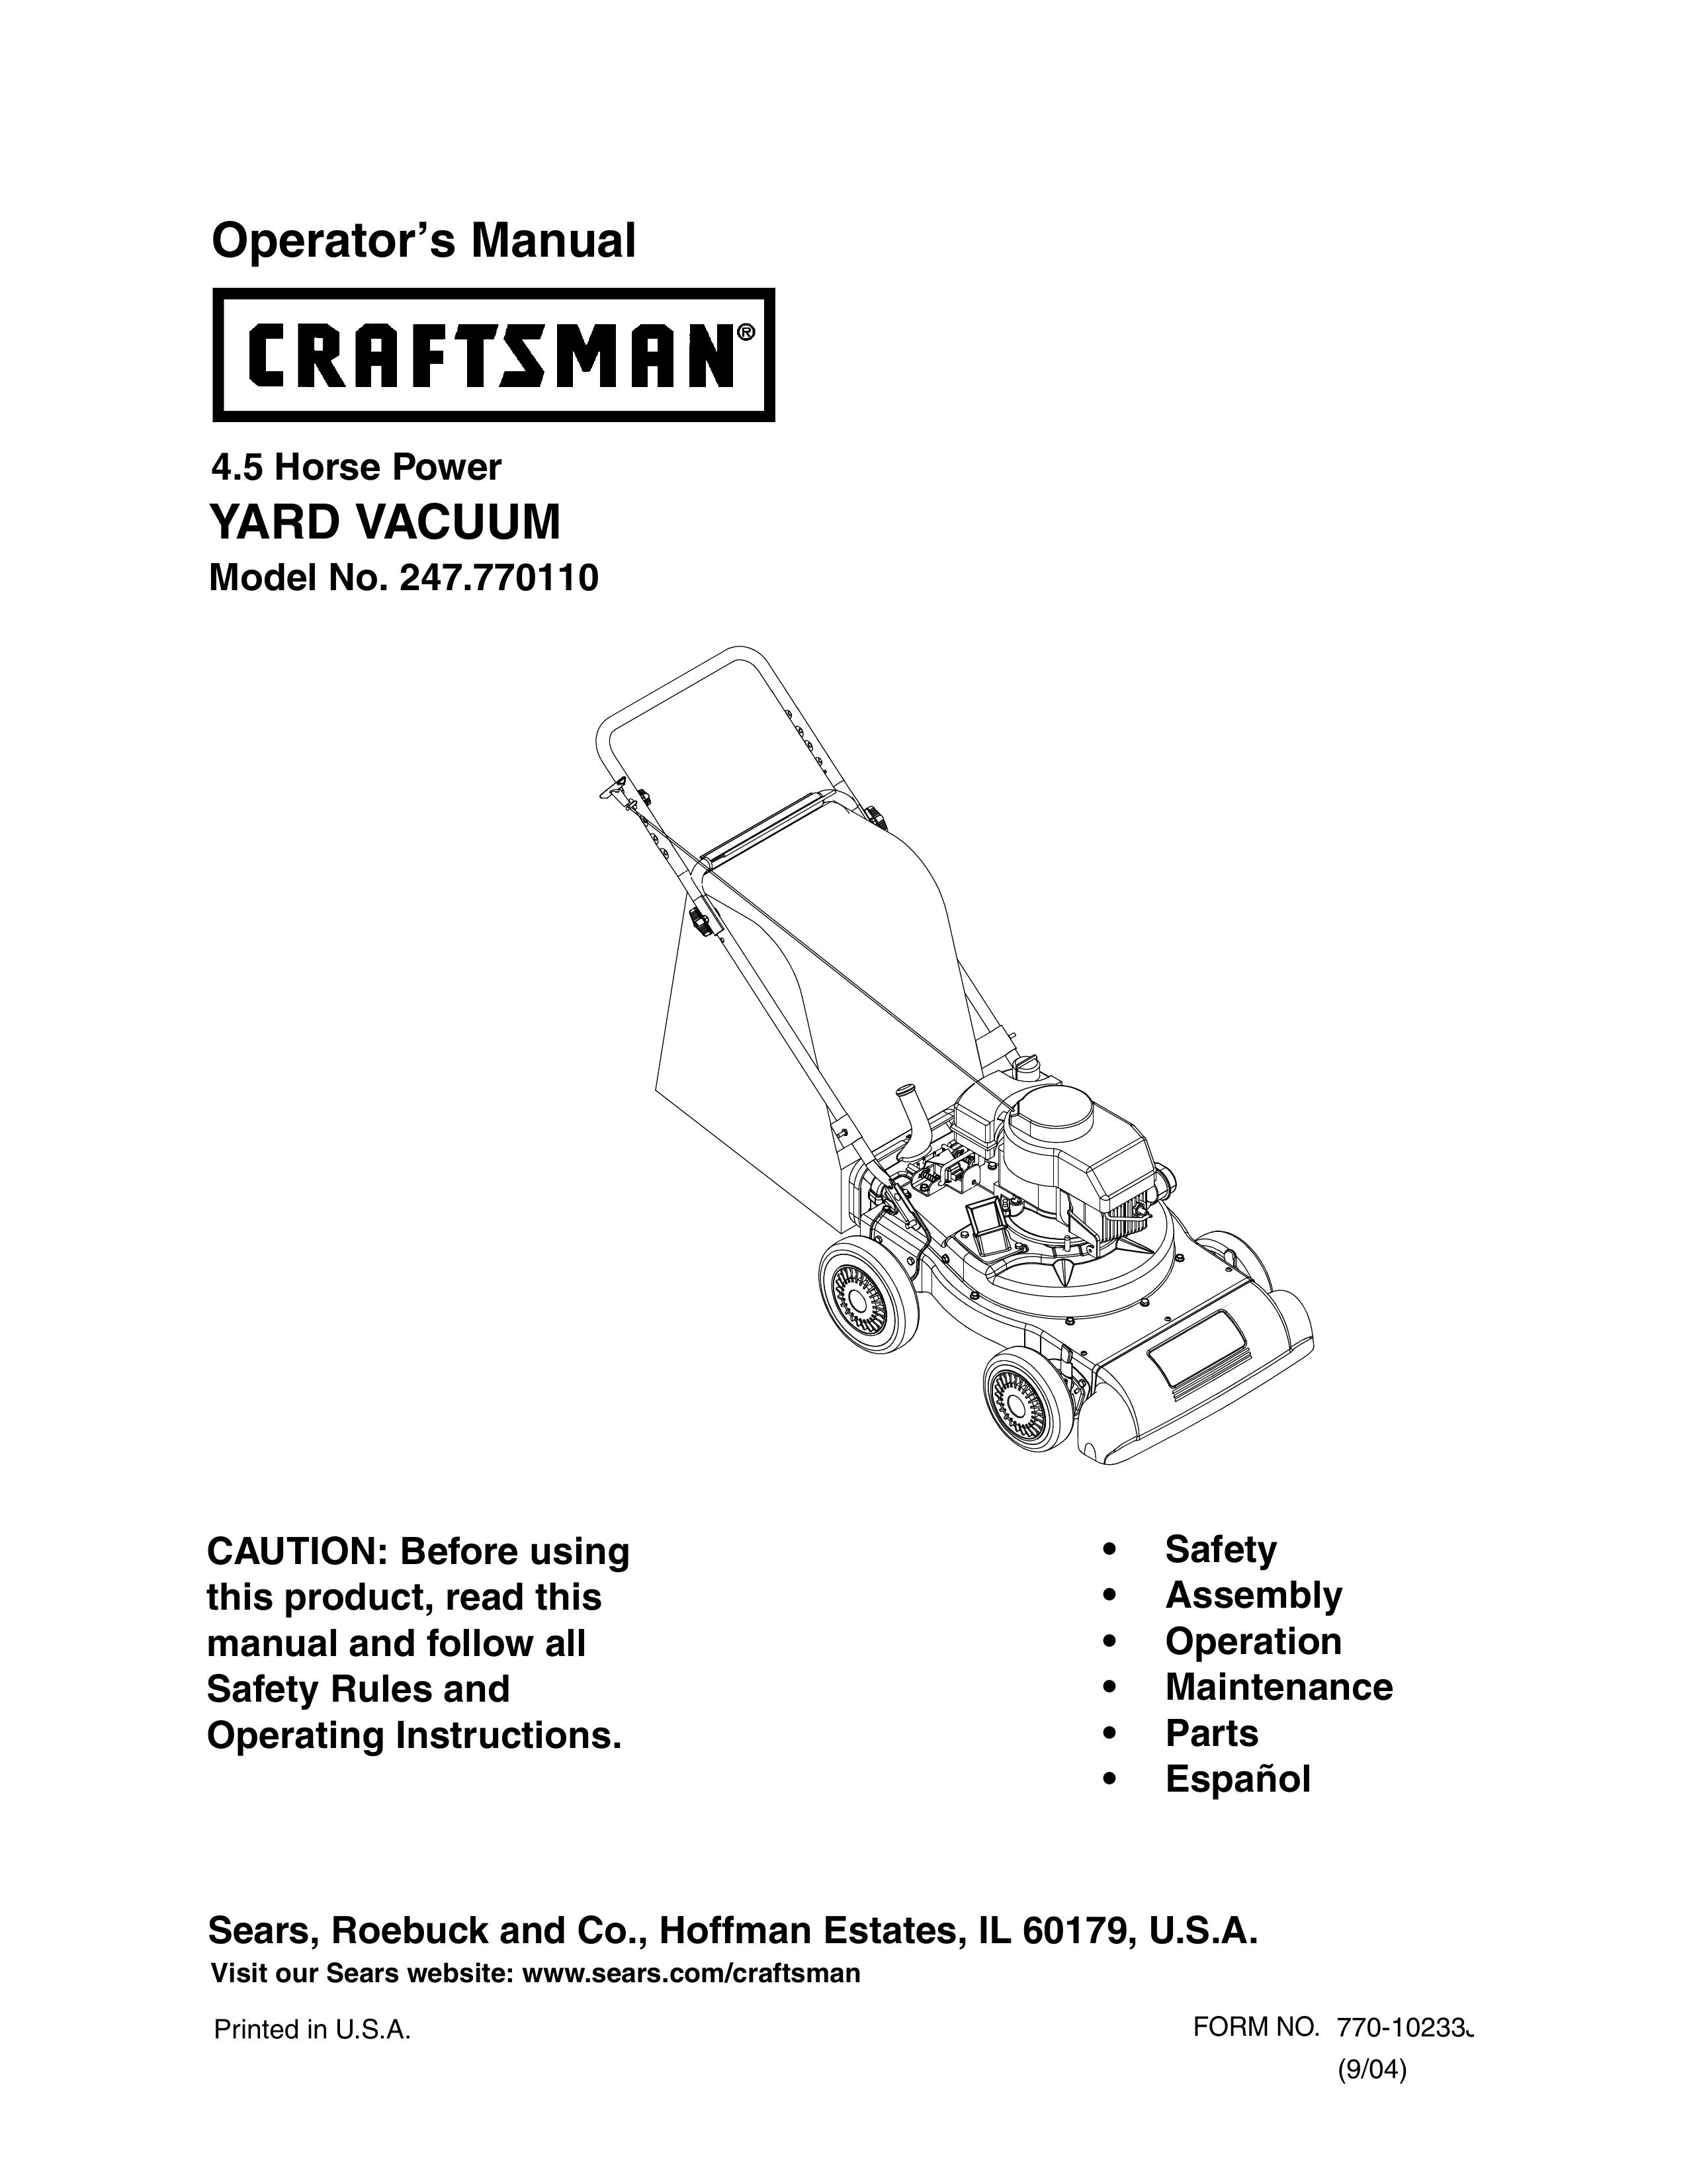 Craftsman 247.77011 Yard Vacuum User Manual